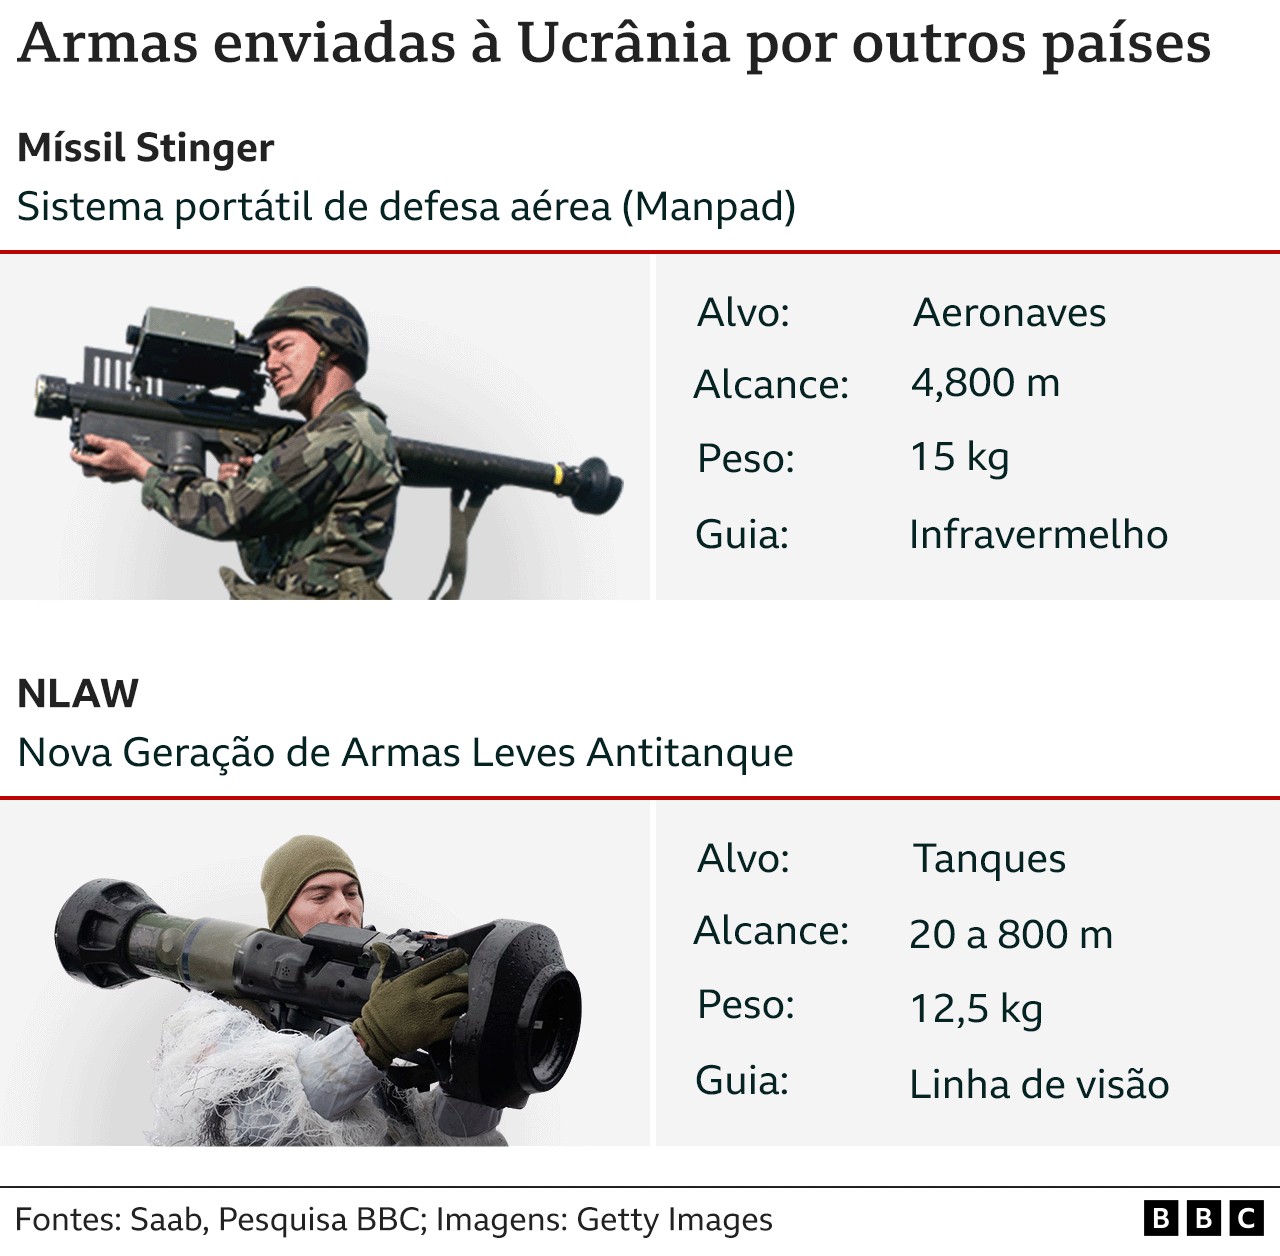 Informações sobre armas enviadas à Ucrânia (Foto: BBC News)